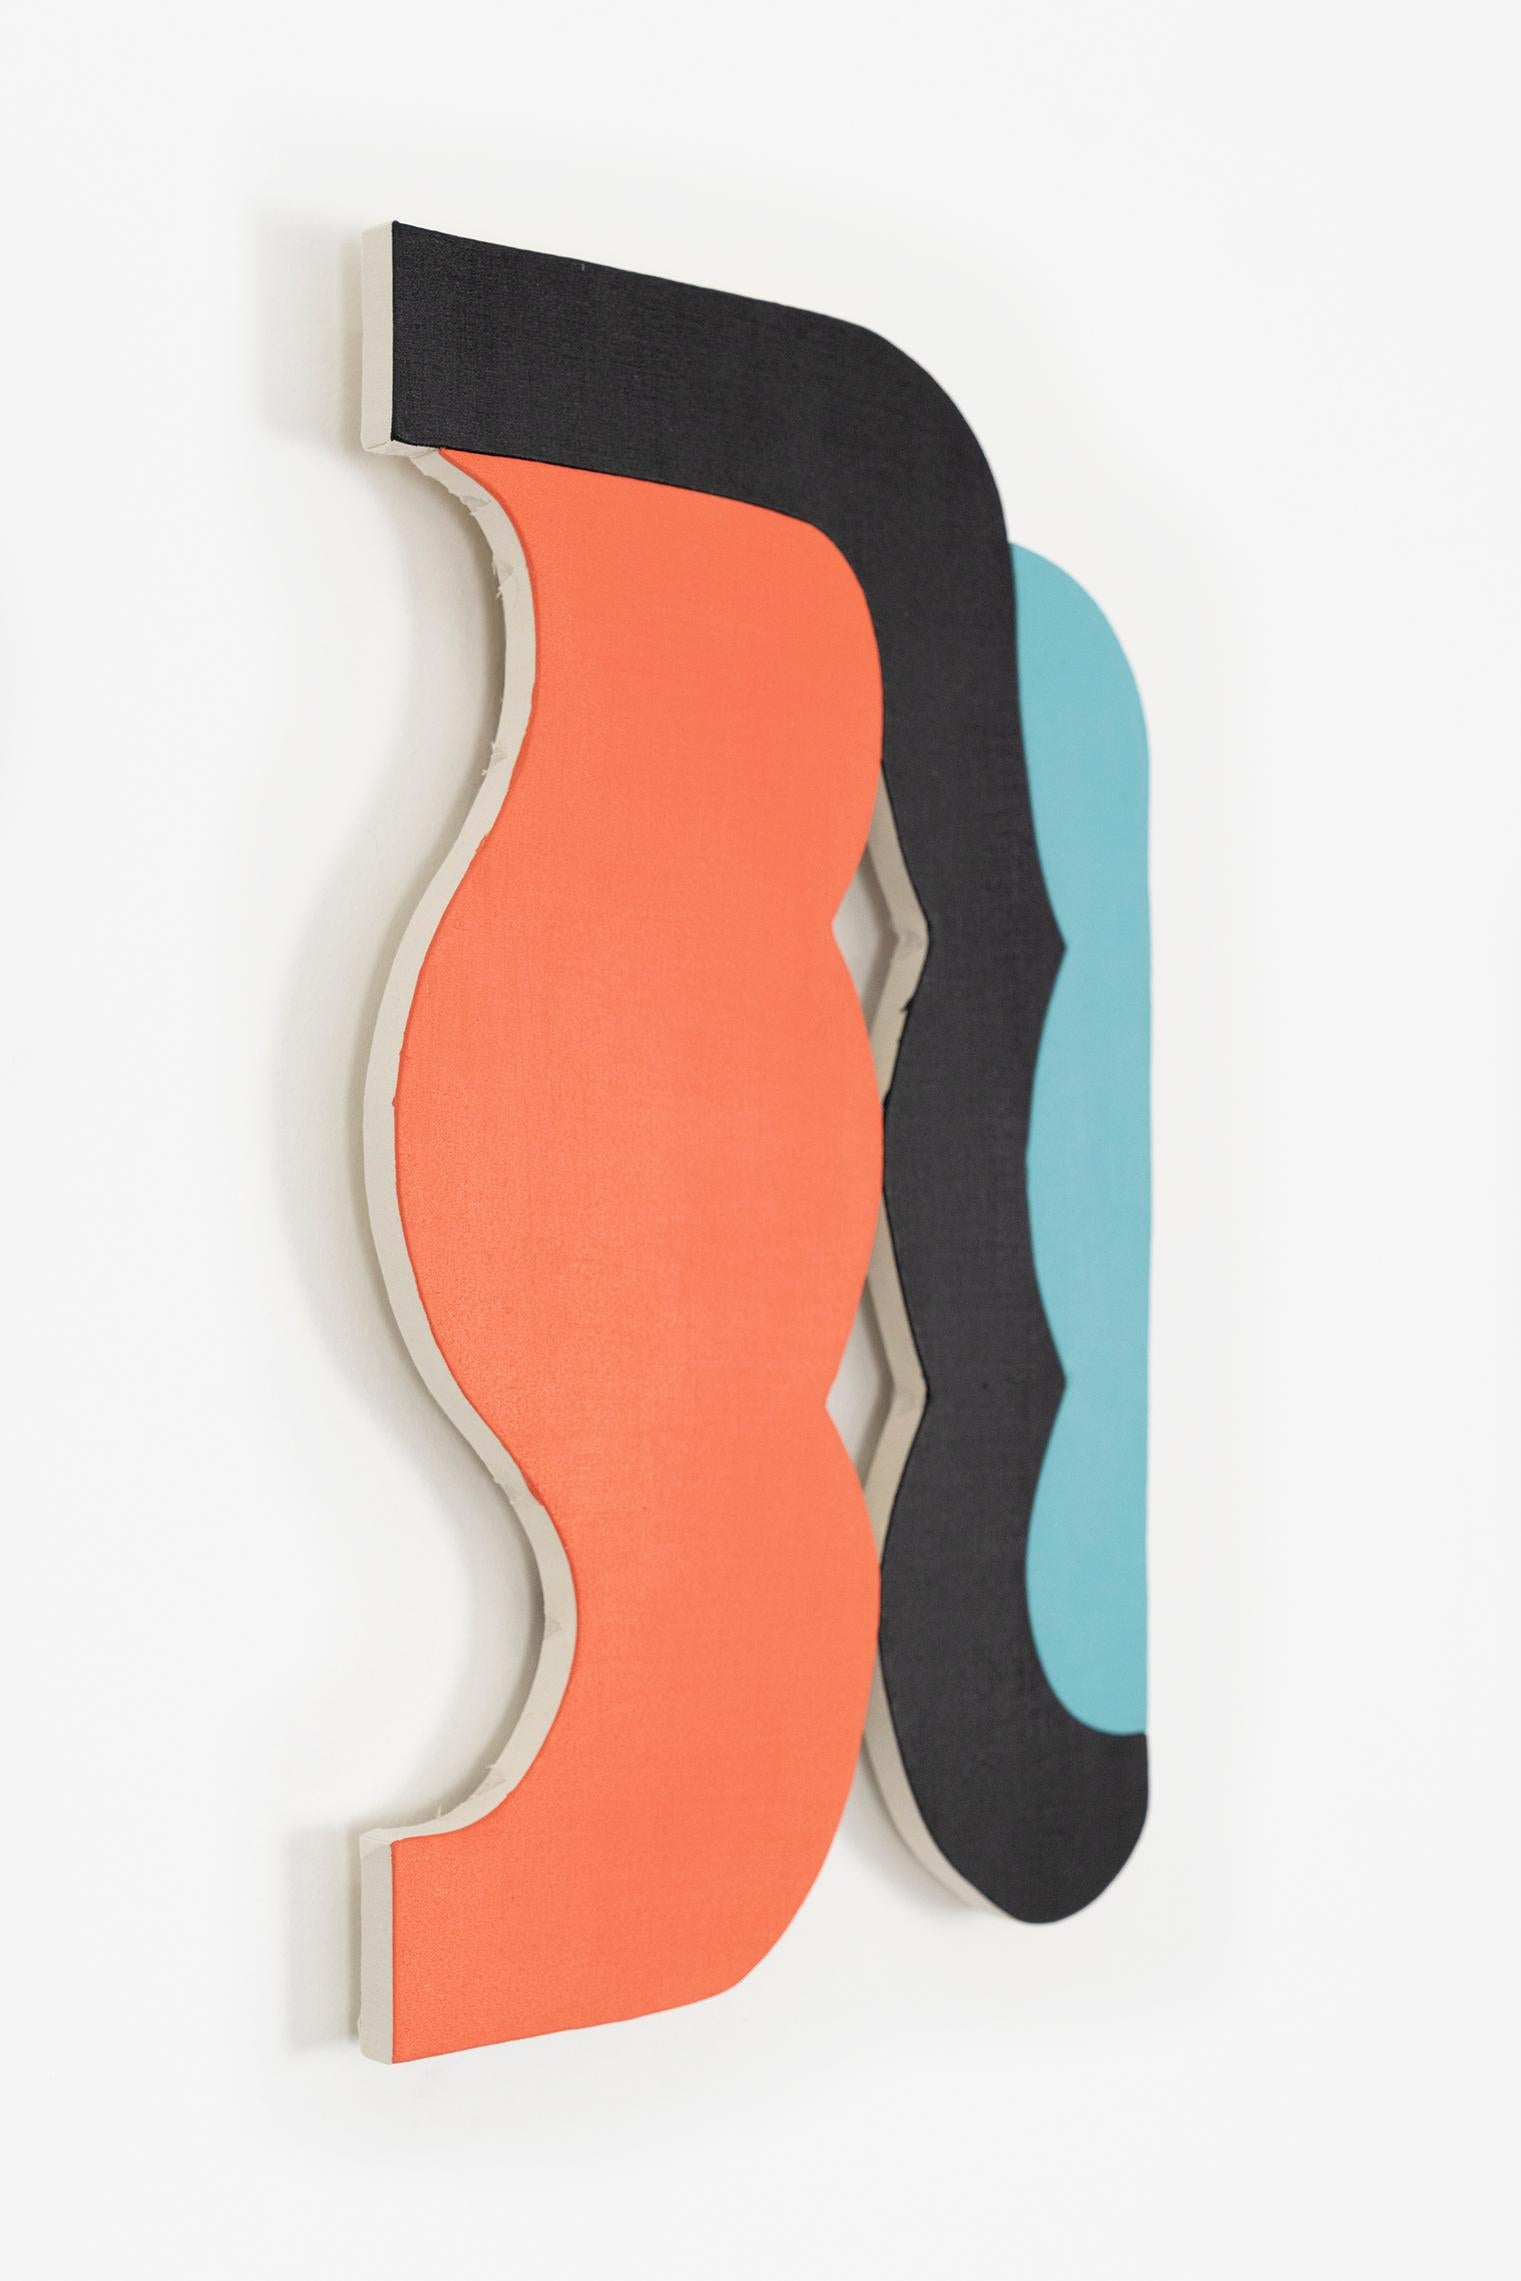 „21-9“ Wandskulptur – orange, teal, blau, schwarz, lachs, kühn, klein – Sculpture von Jason Matherly